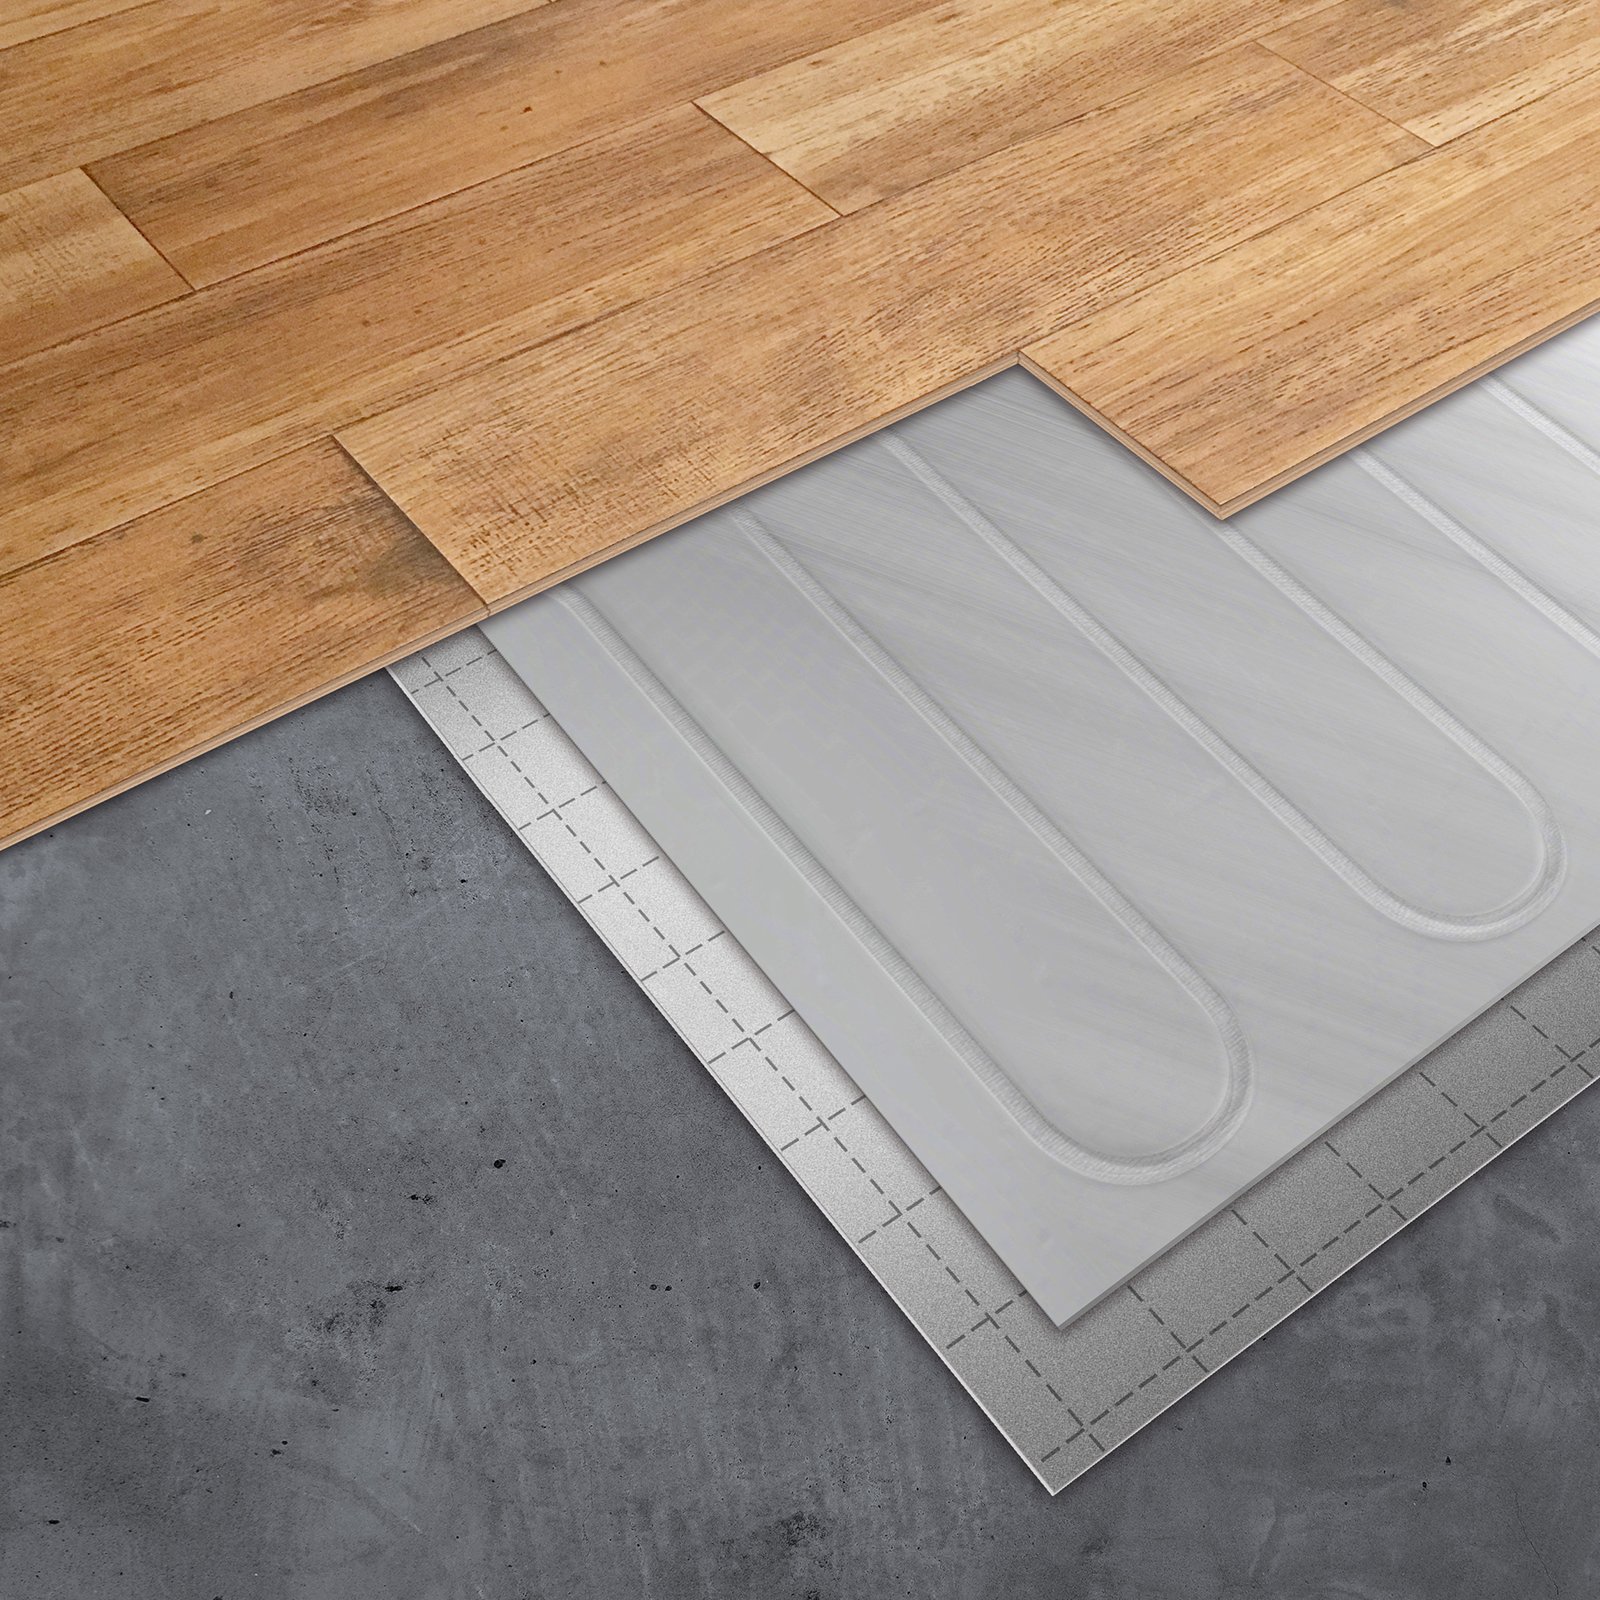 Floor heating with aluminium heating mat under laminate or parquet flooring